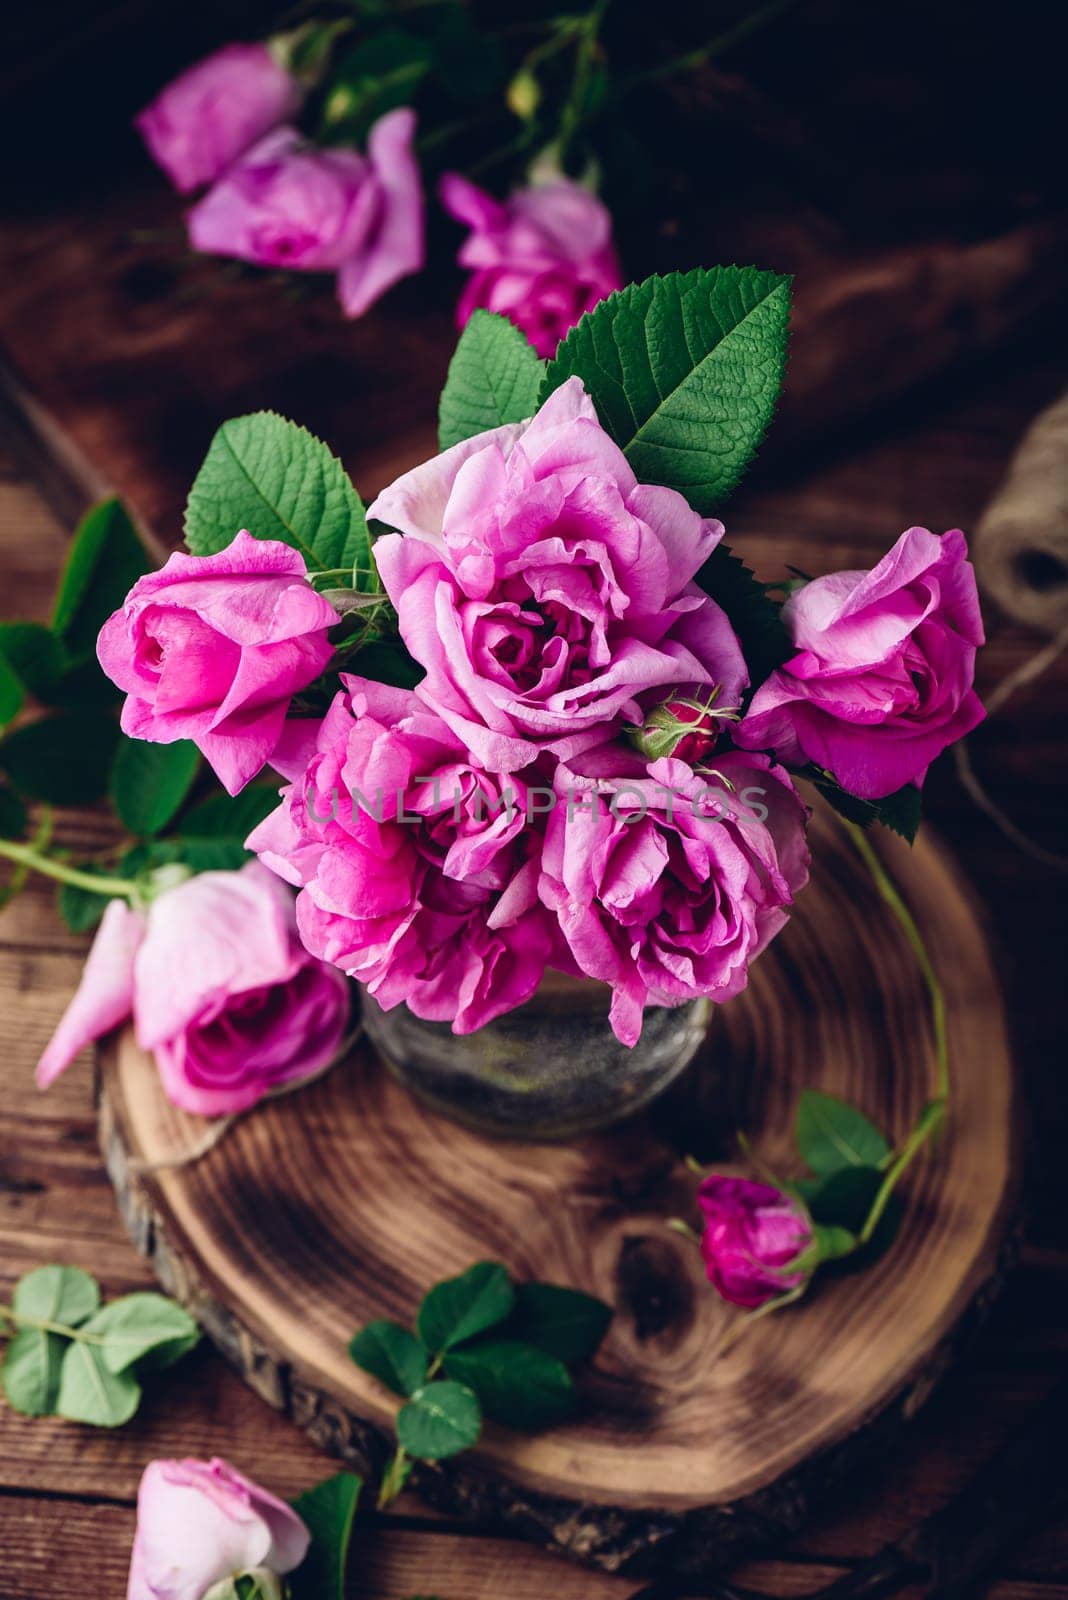 Pink garden roses in glass vase by Seva_blsv